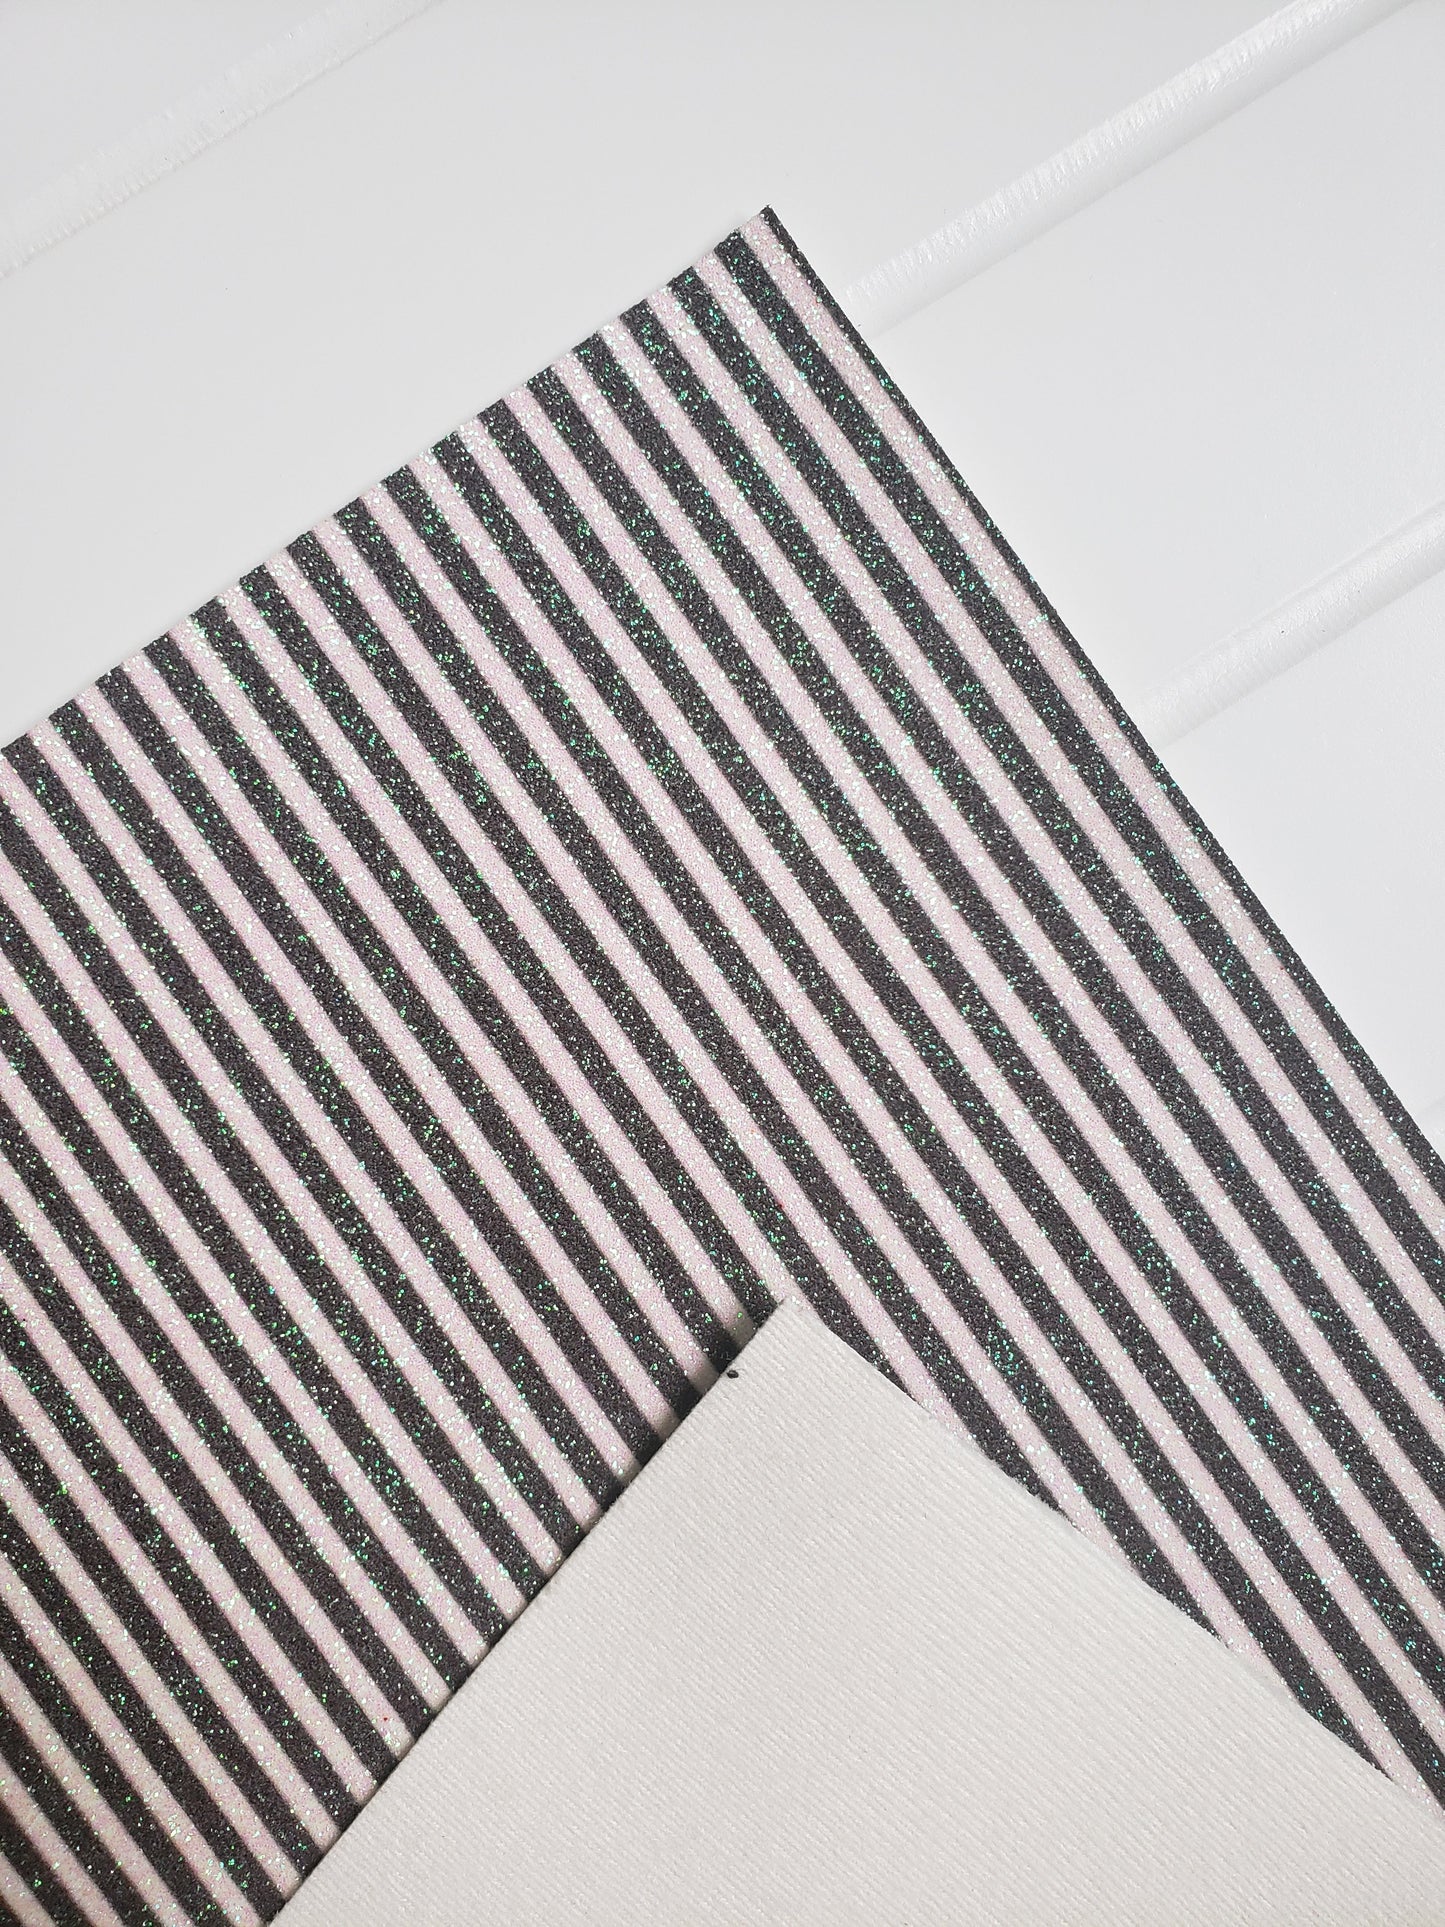 Stripe glitter fabric sheets (soft cotton backing)